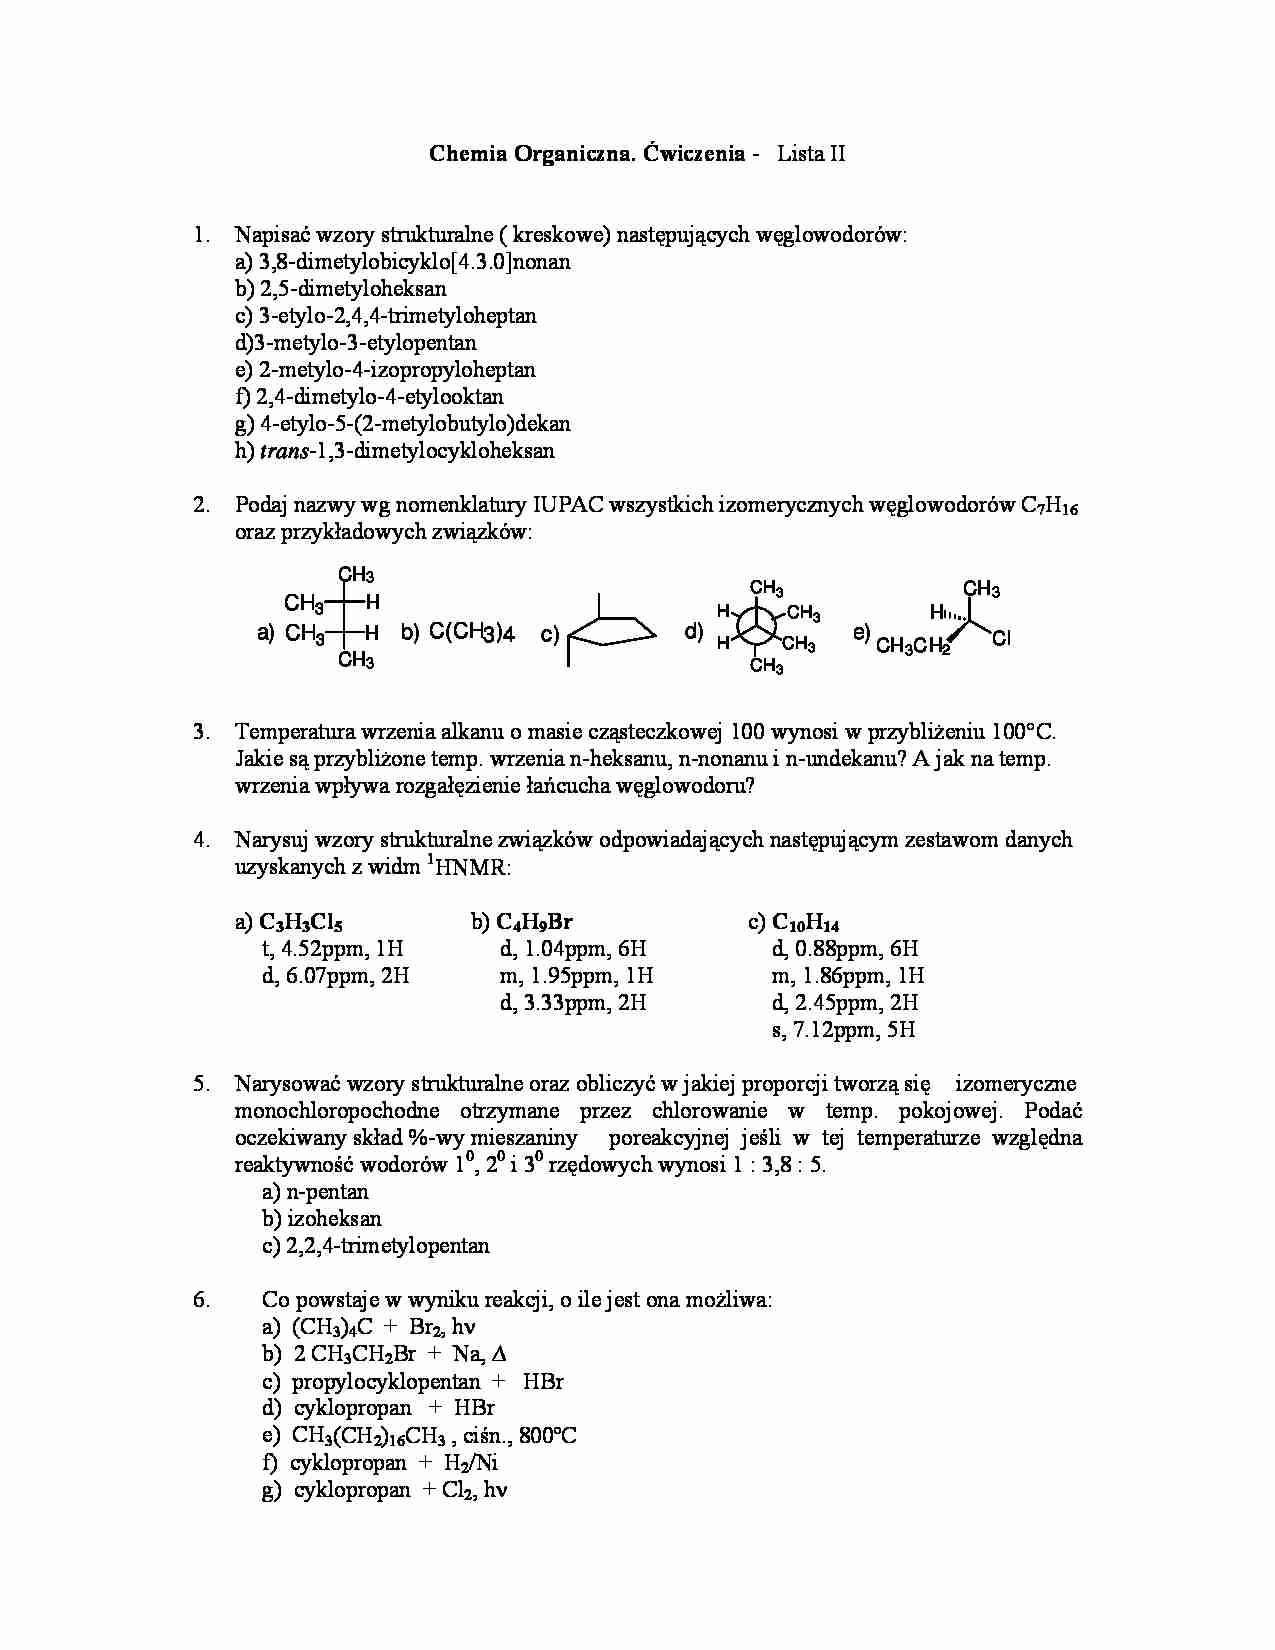 Chemia organiczna - ćwiczenia, lista II - strona 1